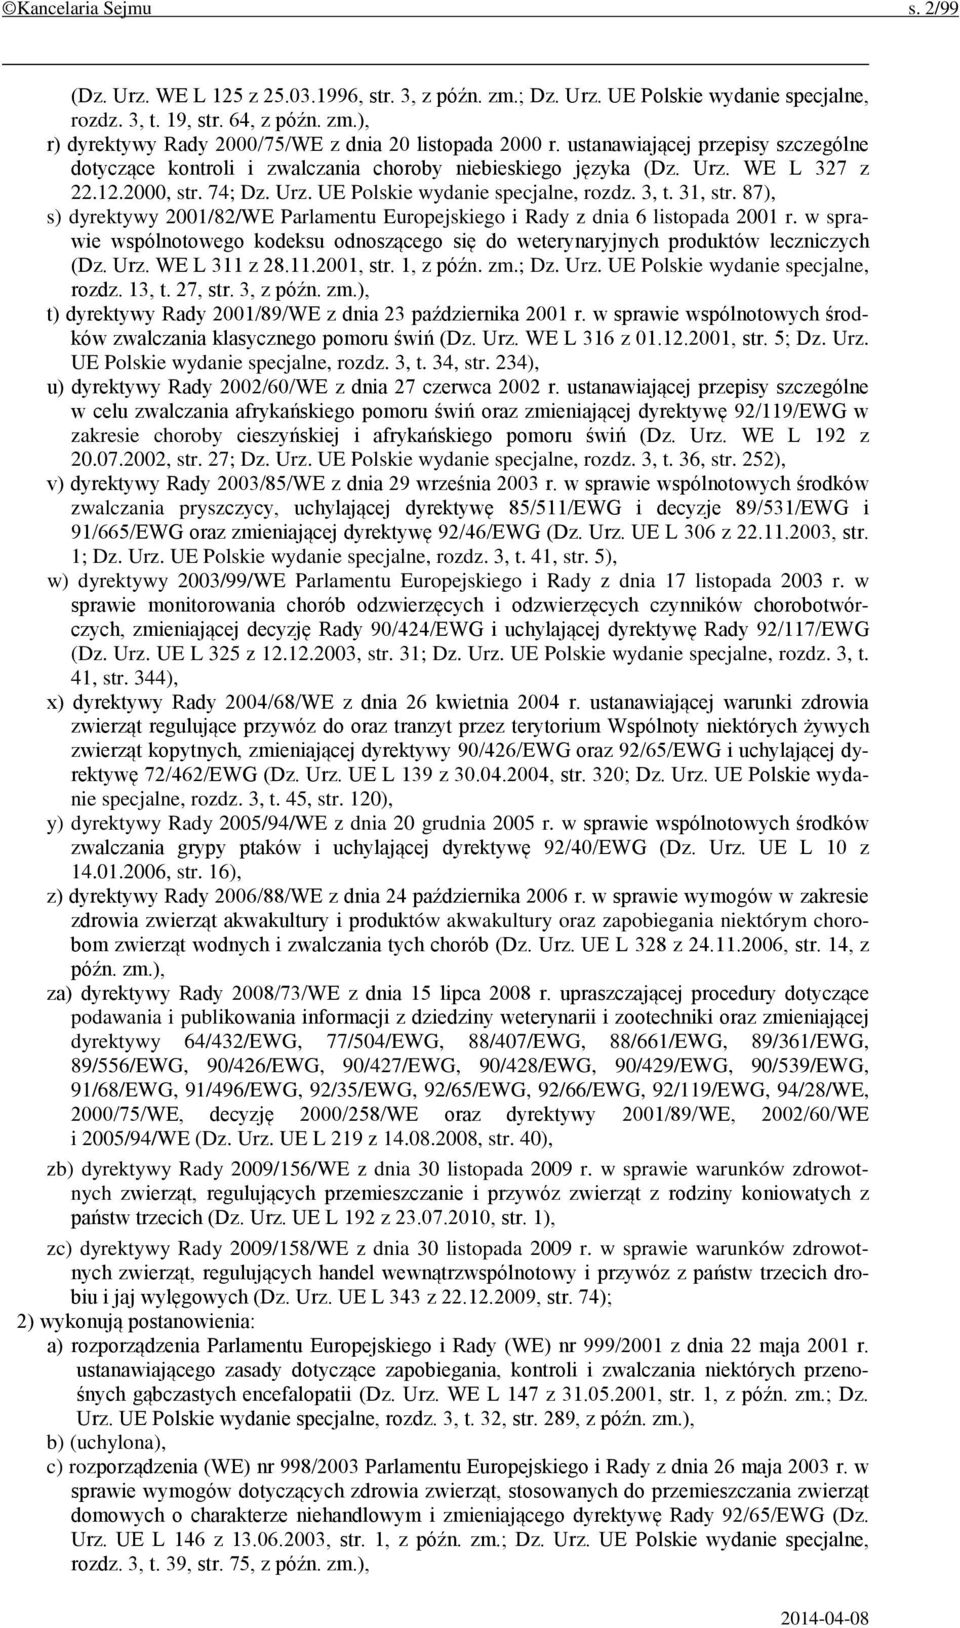 87), s) dyrektywy 2001/82/WE Parlamentu Europejskiego i Rady z dnia 6 listopada 2001 r. w sprawie wspólnotowego kodeksu odnoszącego się do weterynaryjnych produktów leczniczych (Dz. Urz.